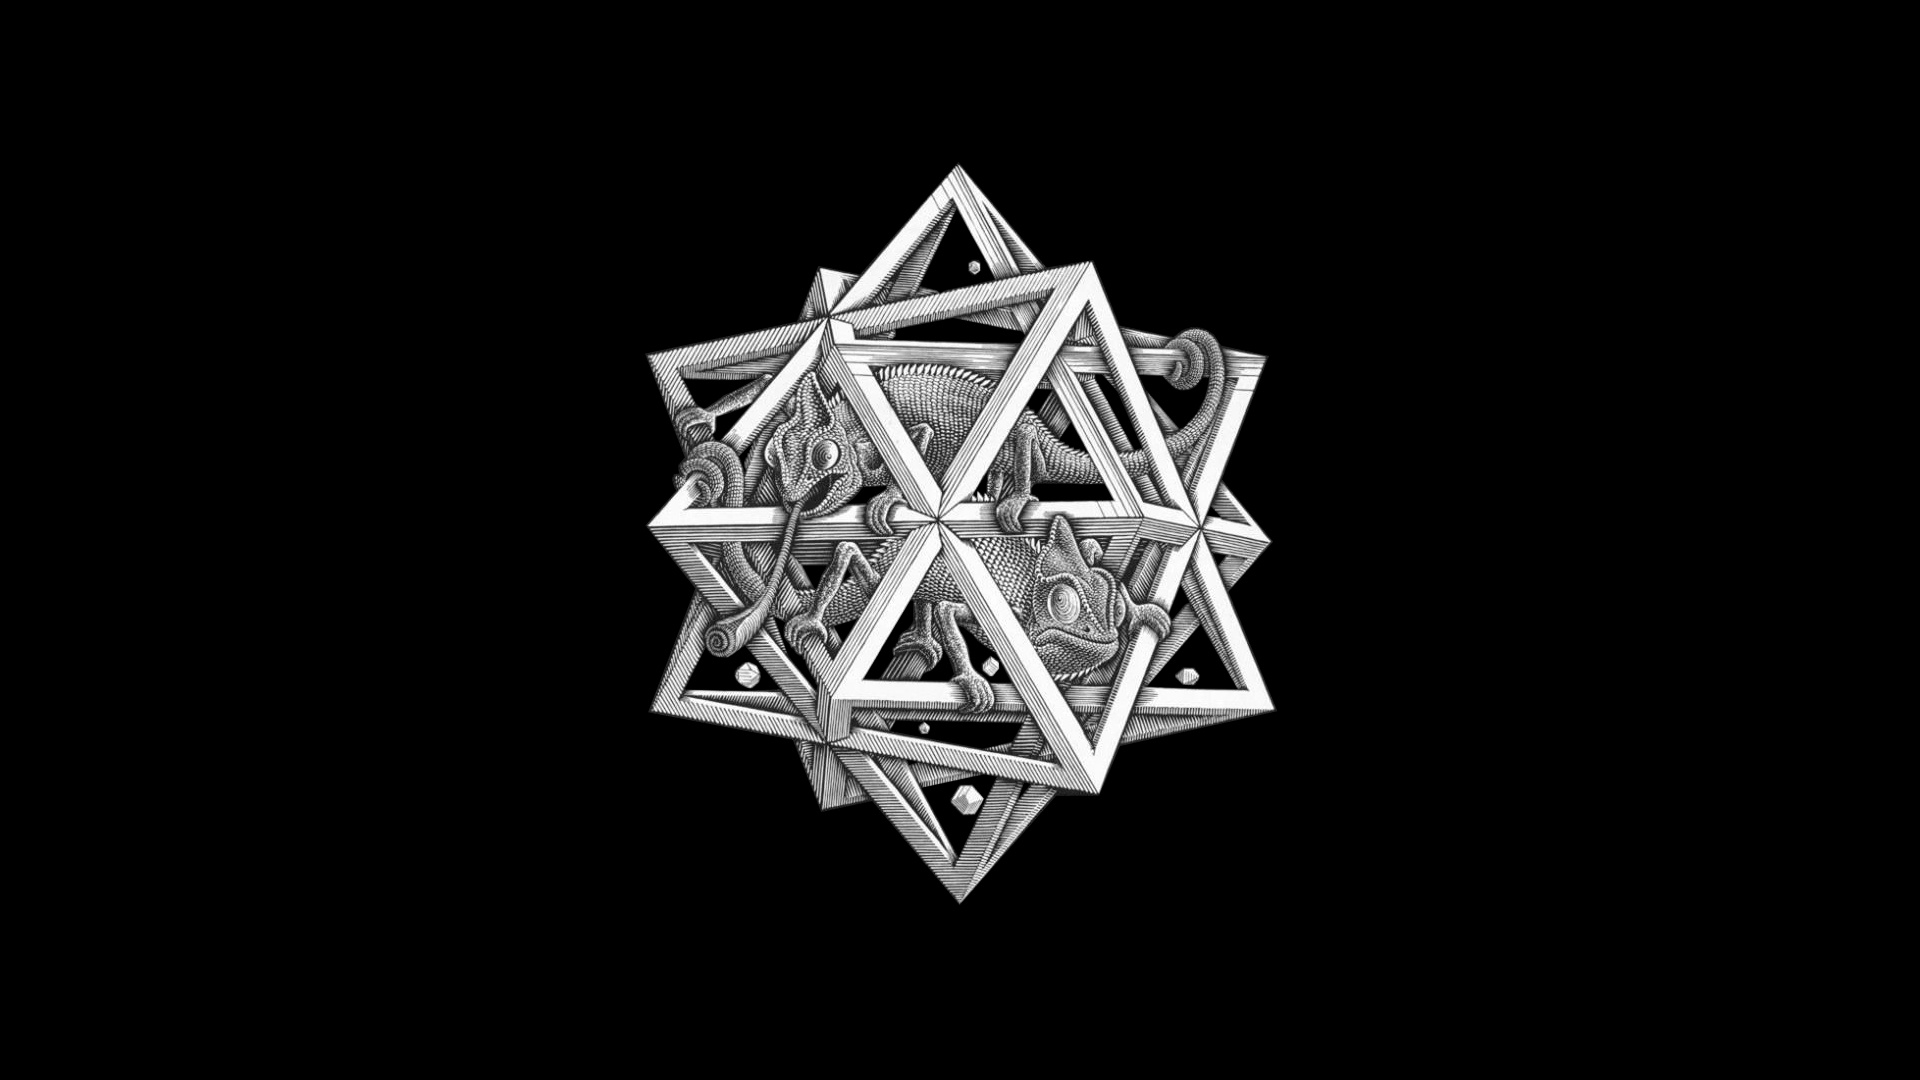 M.C. Escher, Other artist, Star pattern, Digital art, 1920x1080 Full HD Desktop